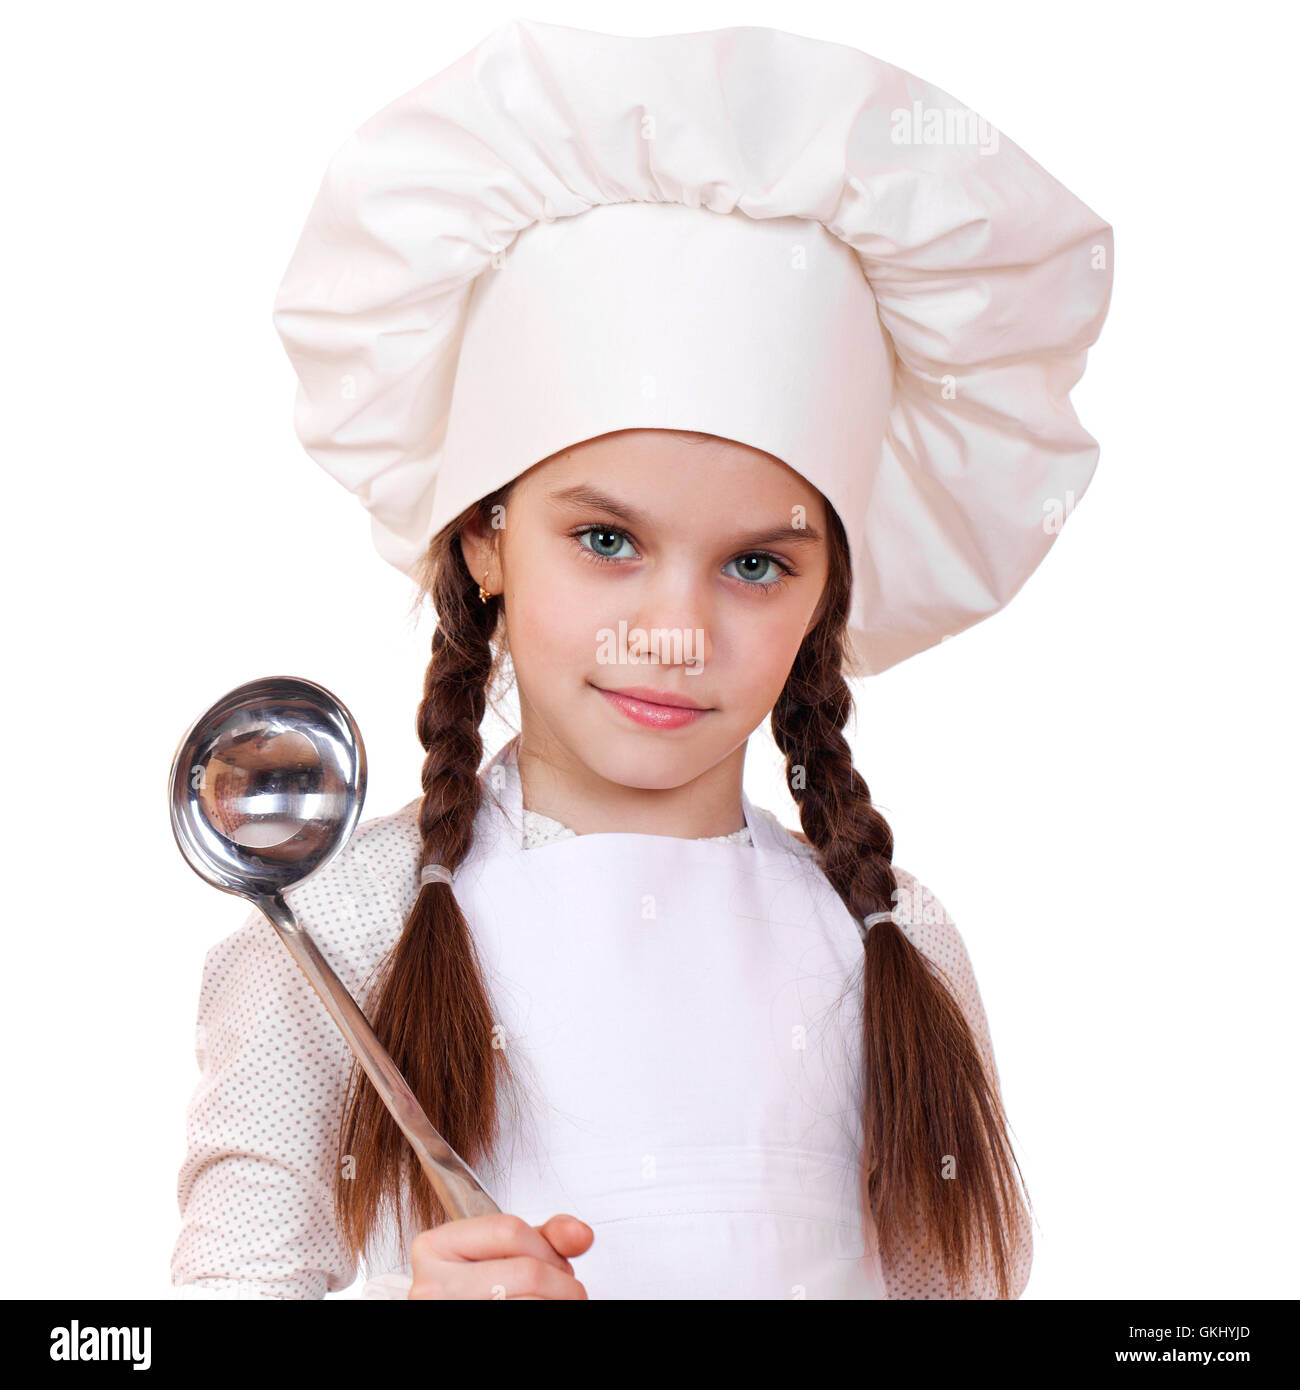 Inquadratura di un po' di cucina piccola ragazza in un bianco uniforme. Isolato su sfondo bianco Foto Stock